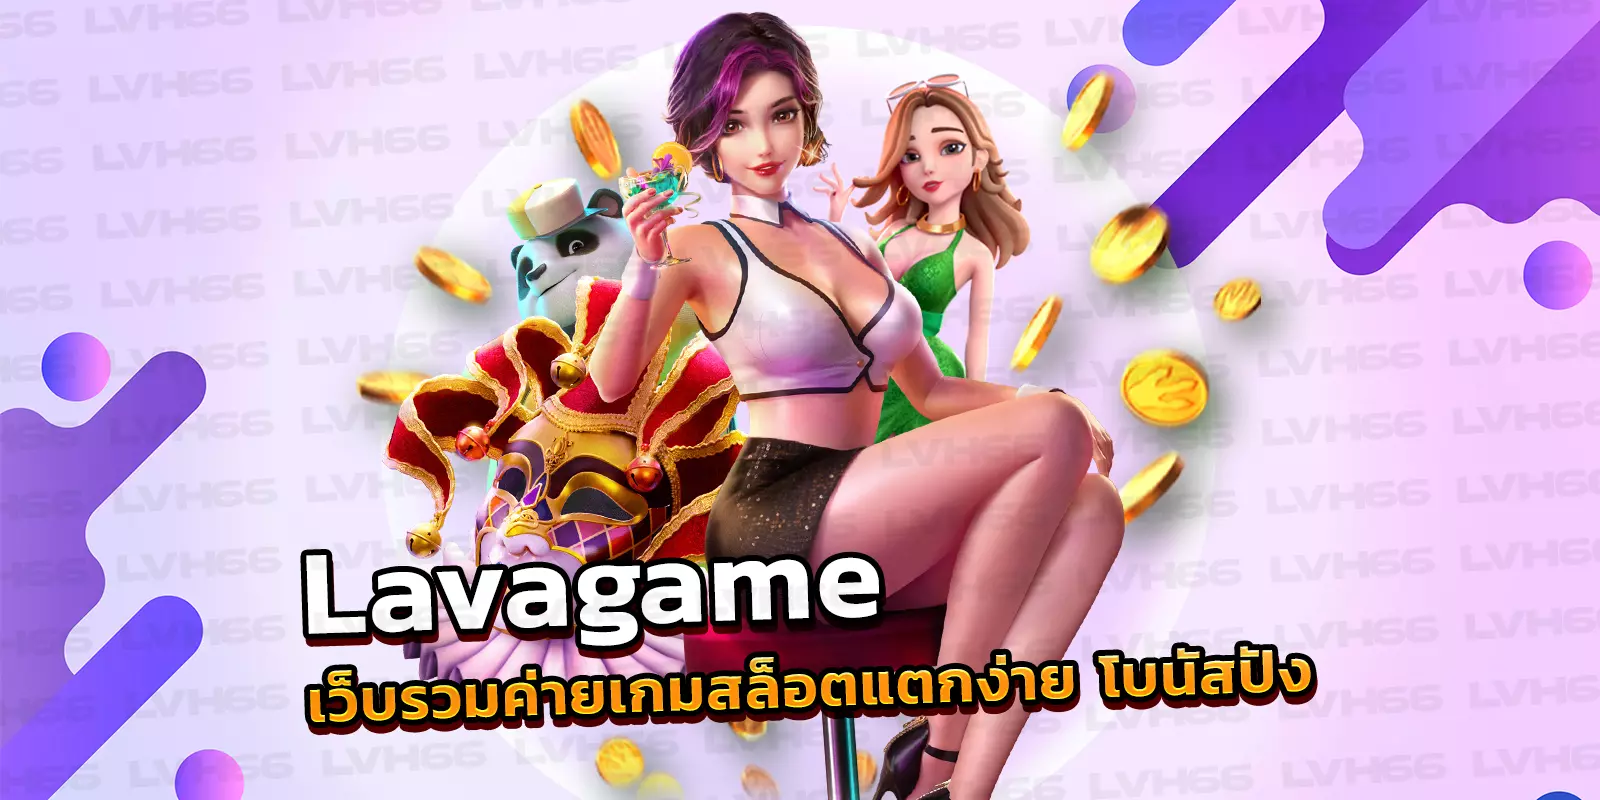 Lavagame เว็บรวมค่ายเกมสล็อตแตกง่าย โบนัสปัง น่าเล่นที่สุด